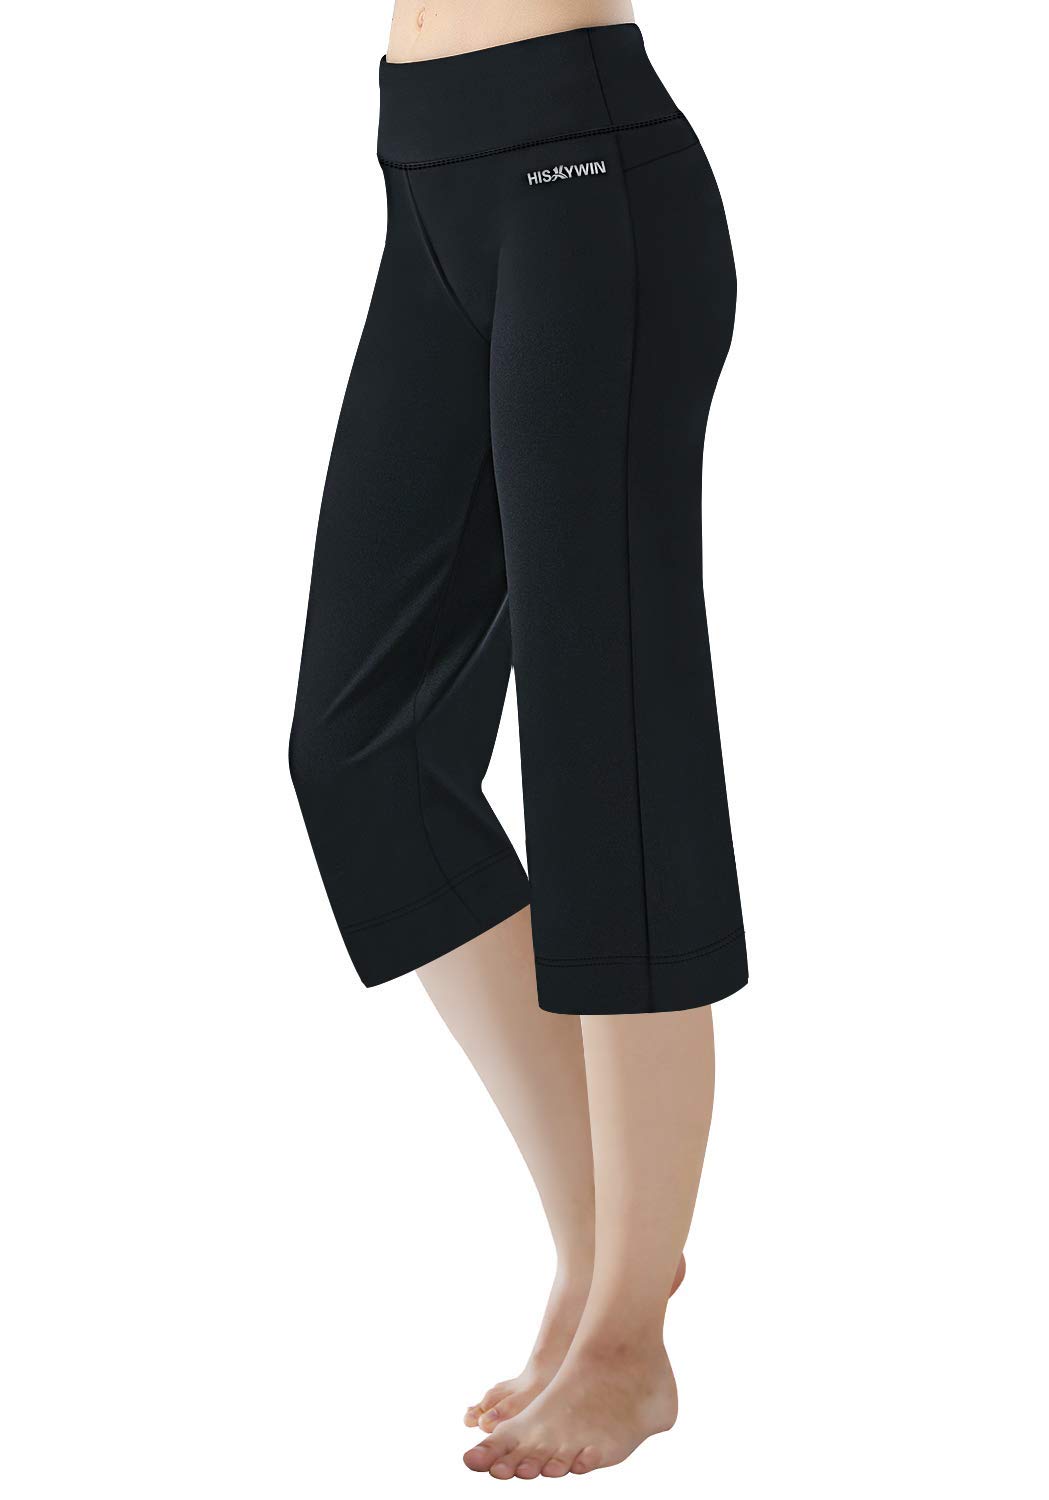 Discover more than 157 capri yoga pants super hot